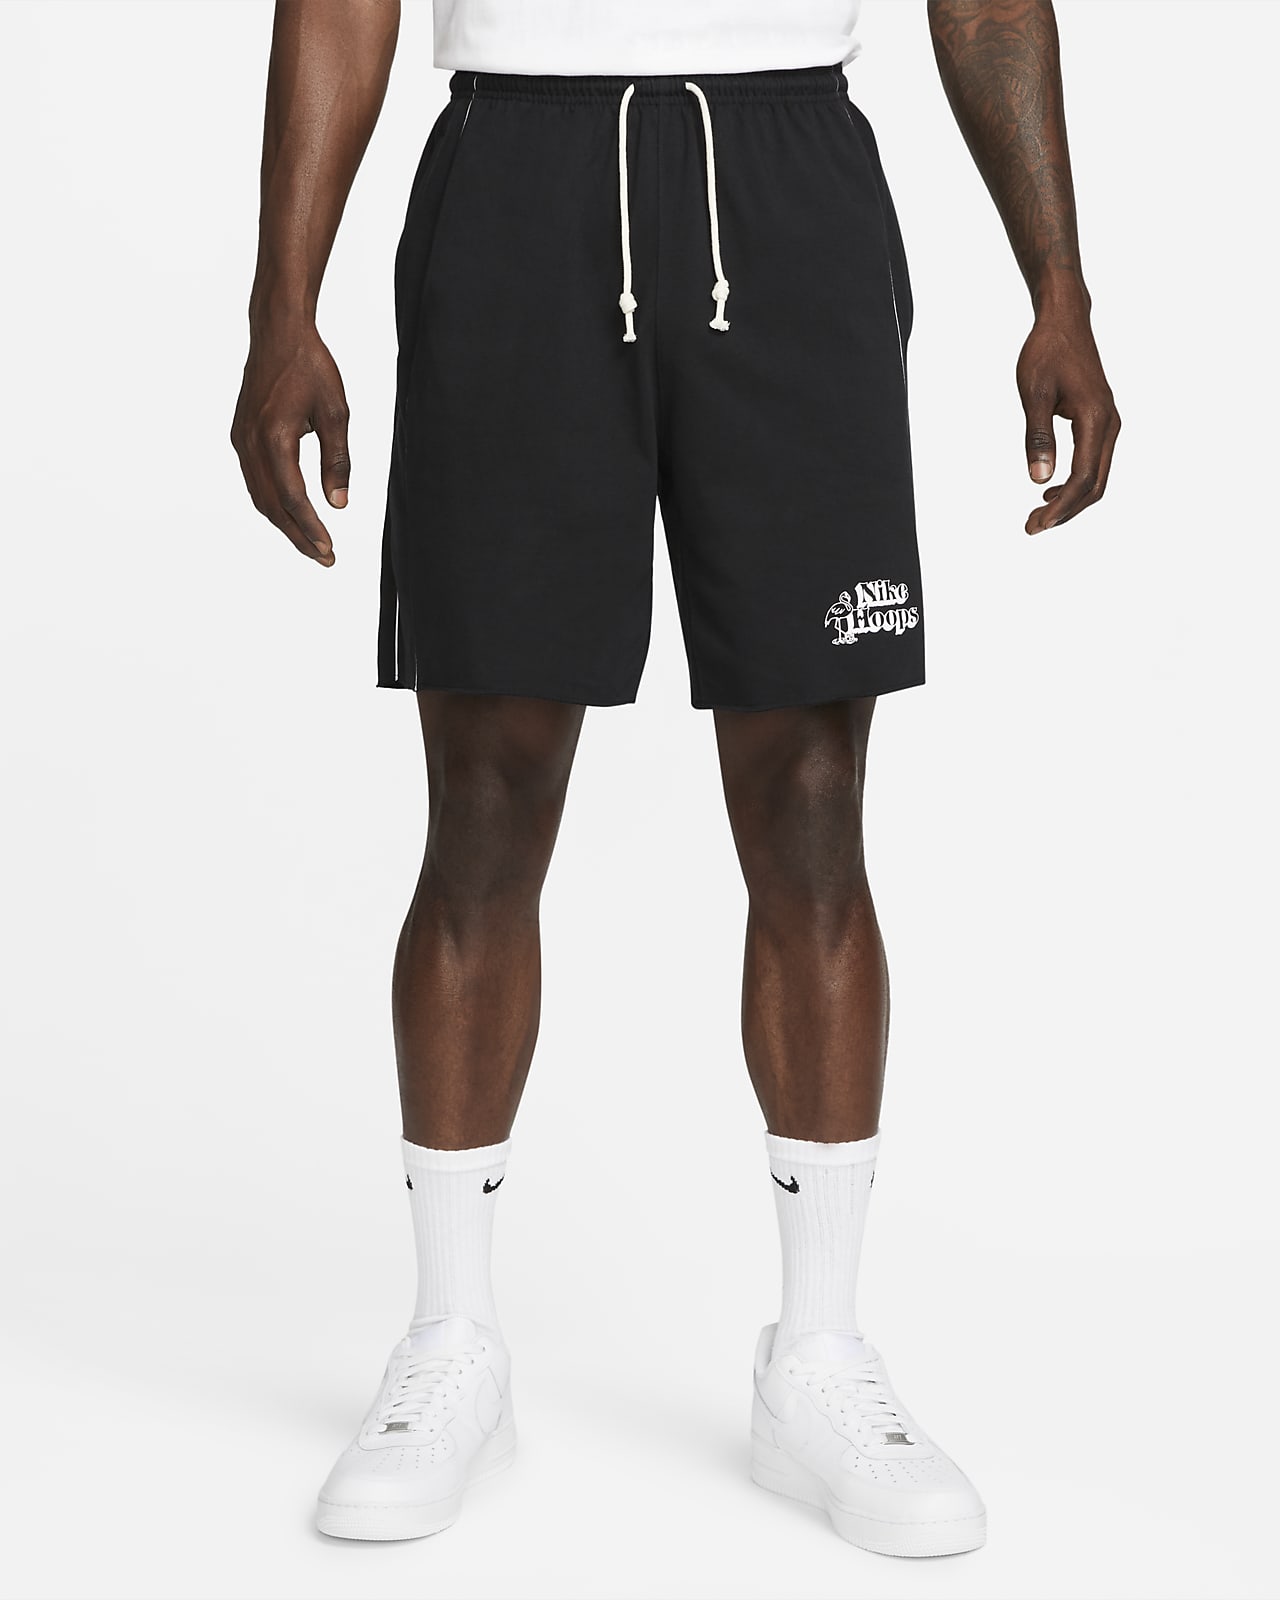 Shorts de básquetbol para hombre Nike Standard Issue